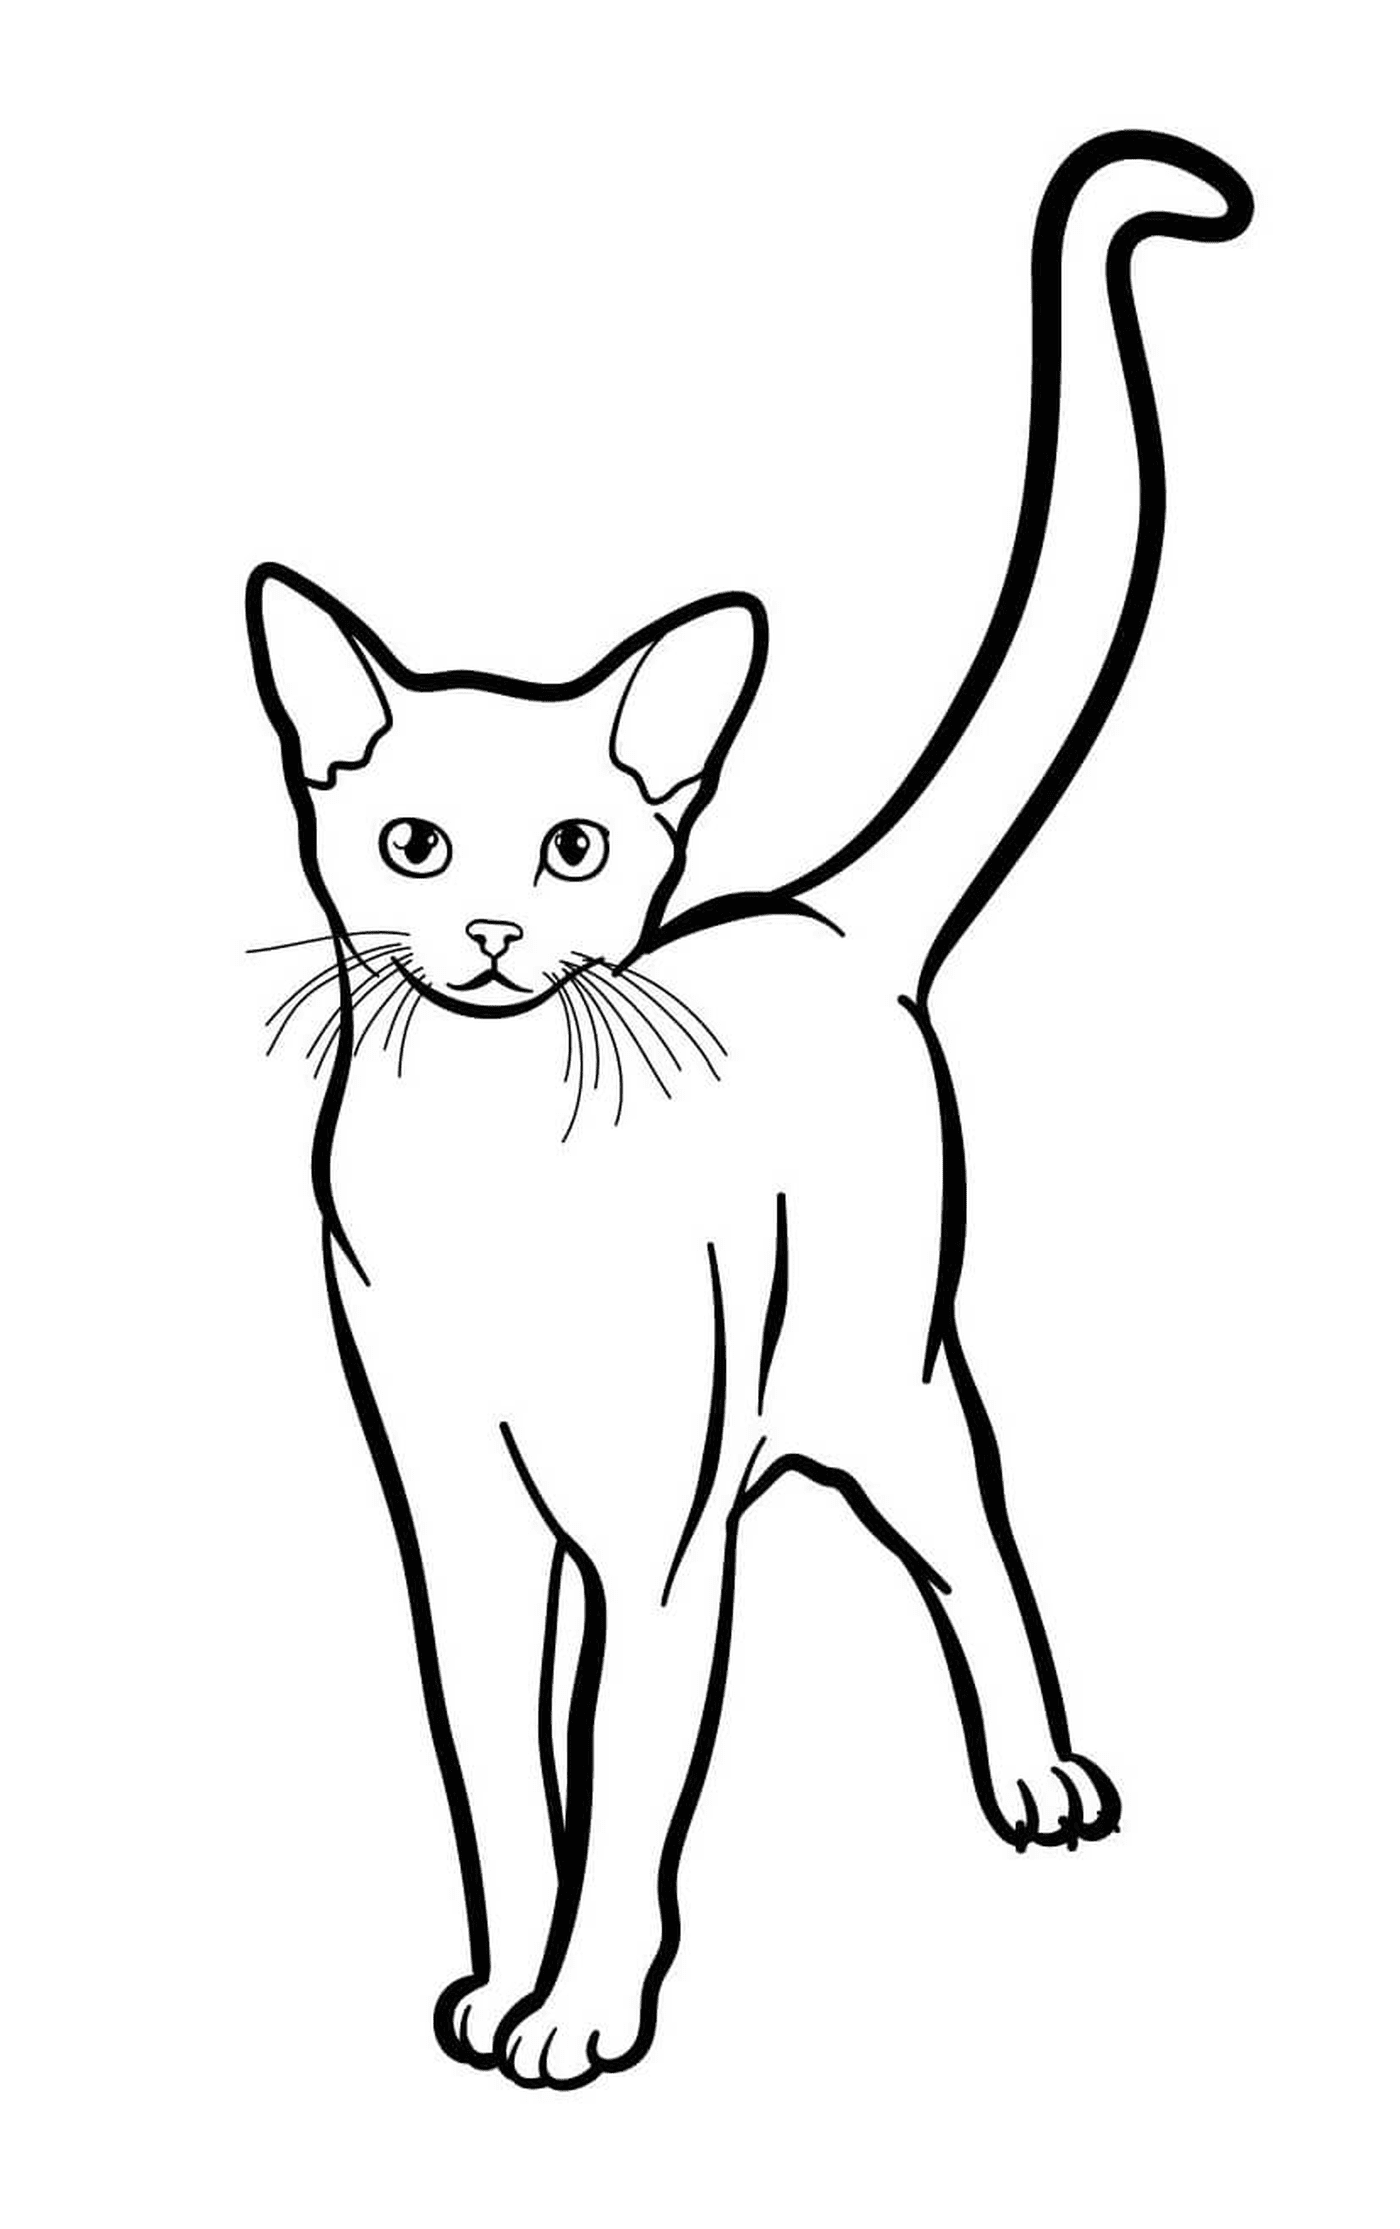  Abissínio, o gato exótico com olhos verdes 